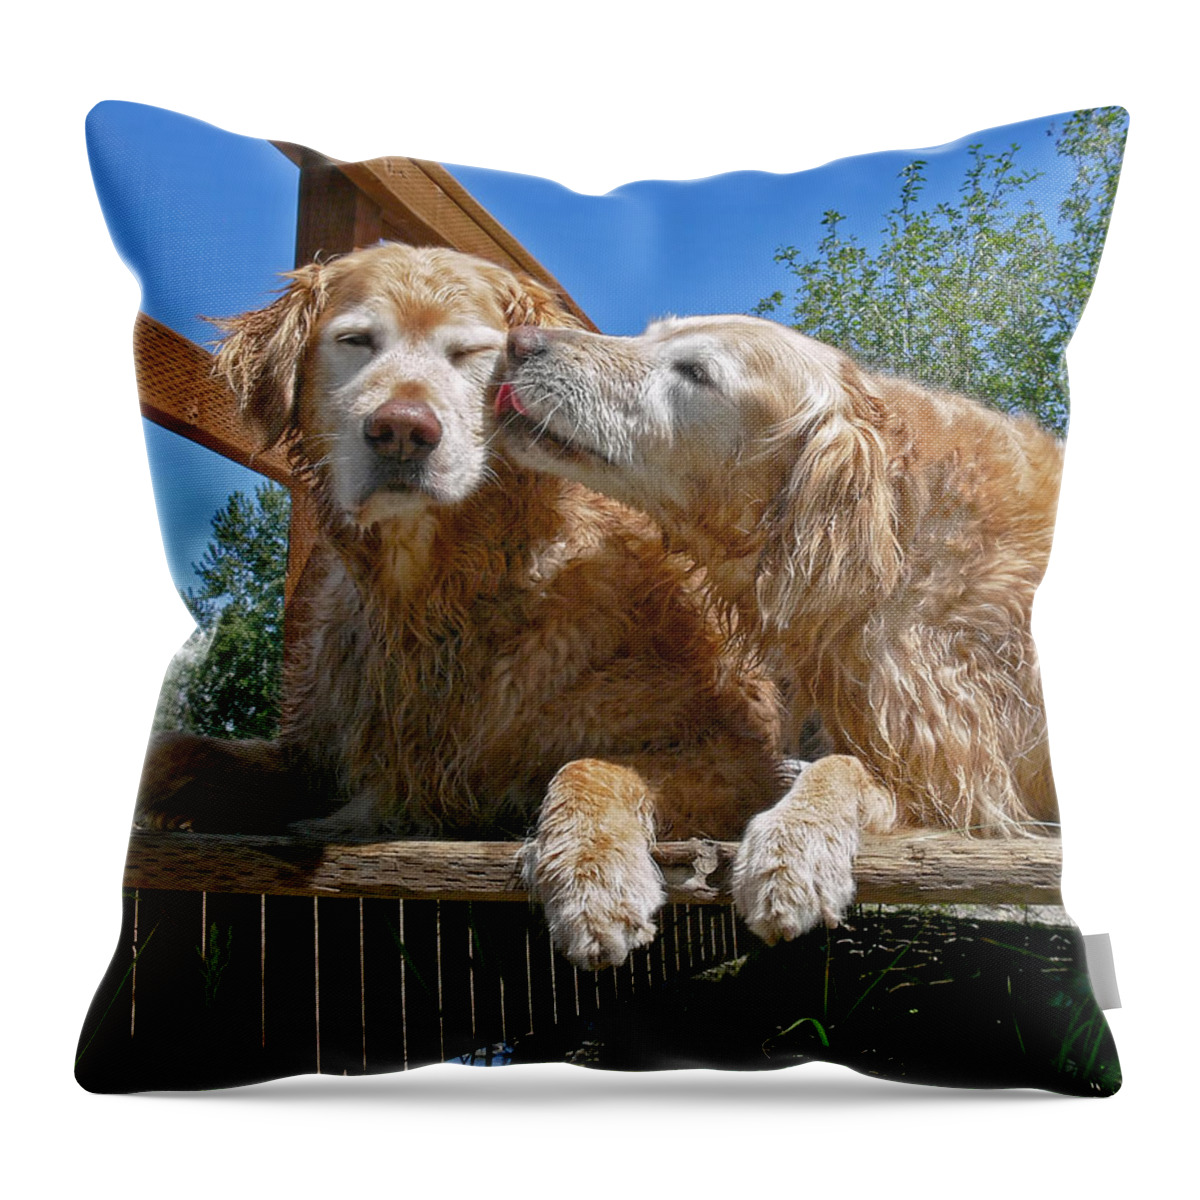 Golden Retriever Throw Pillow featuring the photograph Golden Retriever Dogs The Kiss by Jennie Marie Schell